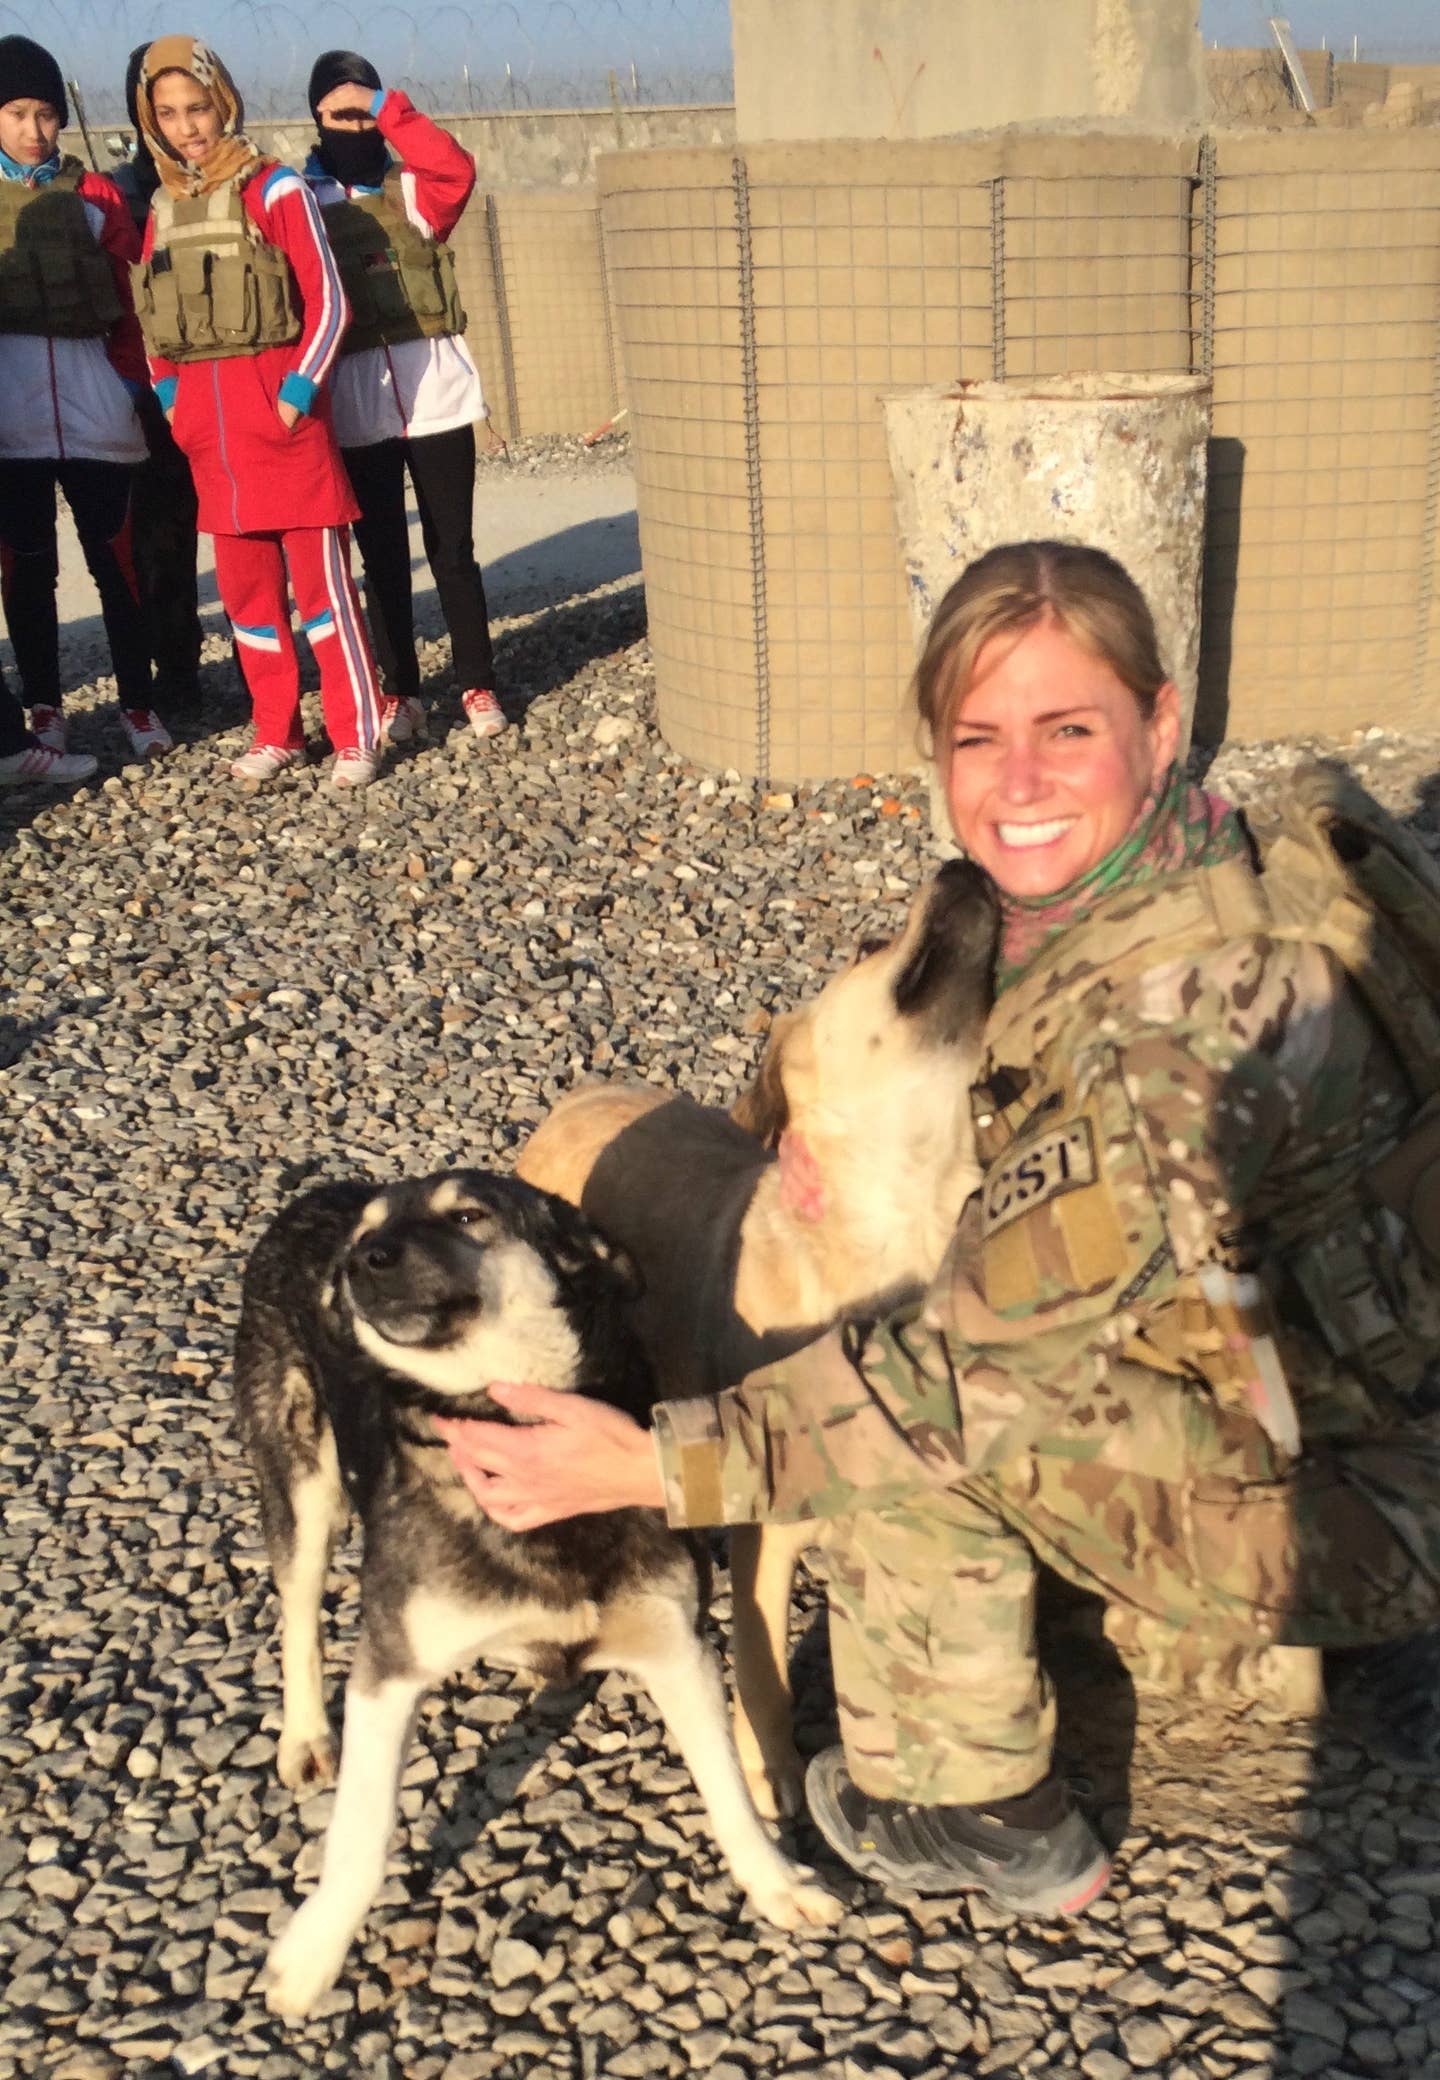 Rebekah Edmonson petting a dog in Afghanistan.